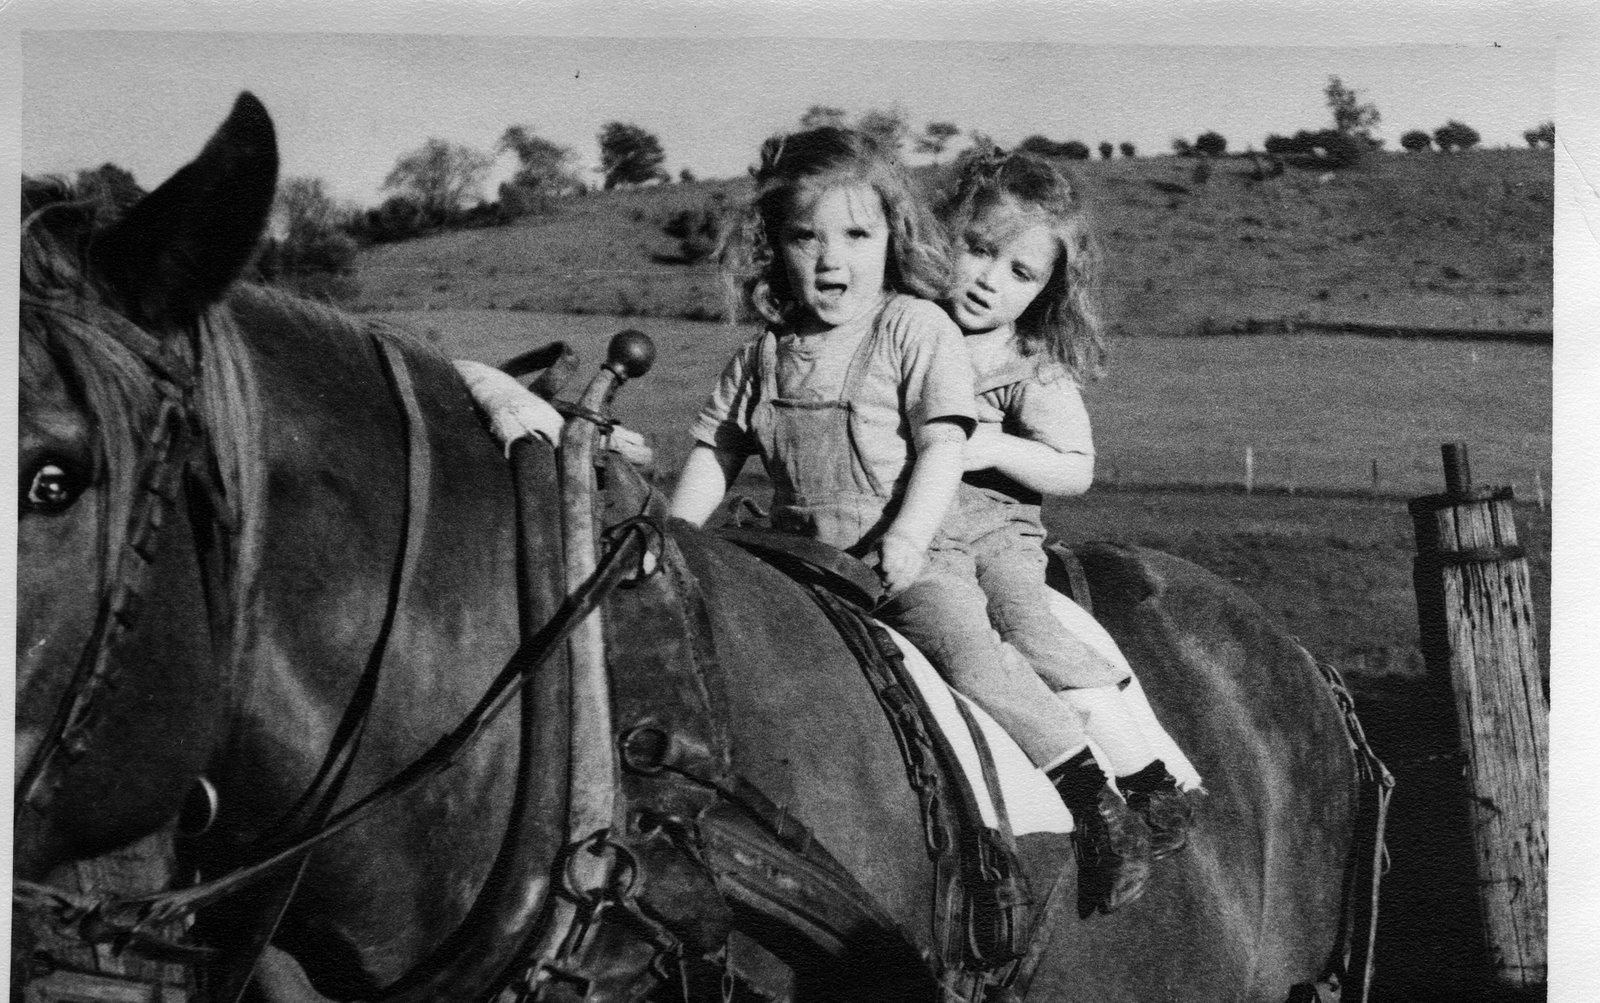 [Sylvia+&+Sonya+on+a+horse.jpg]